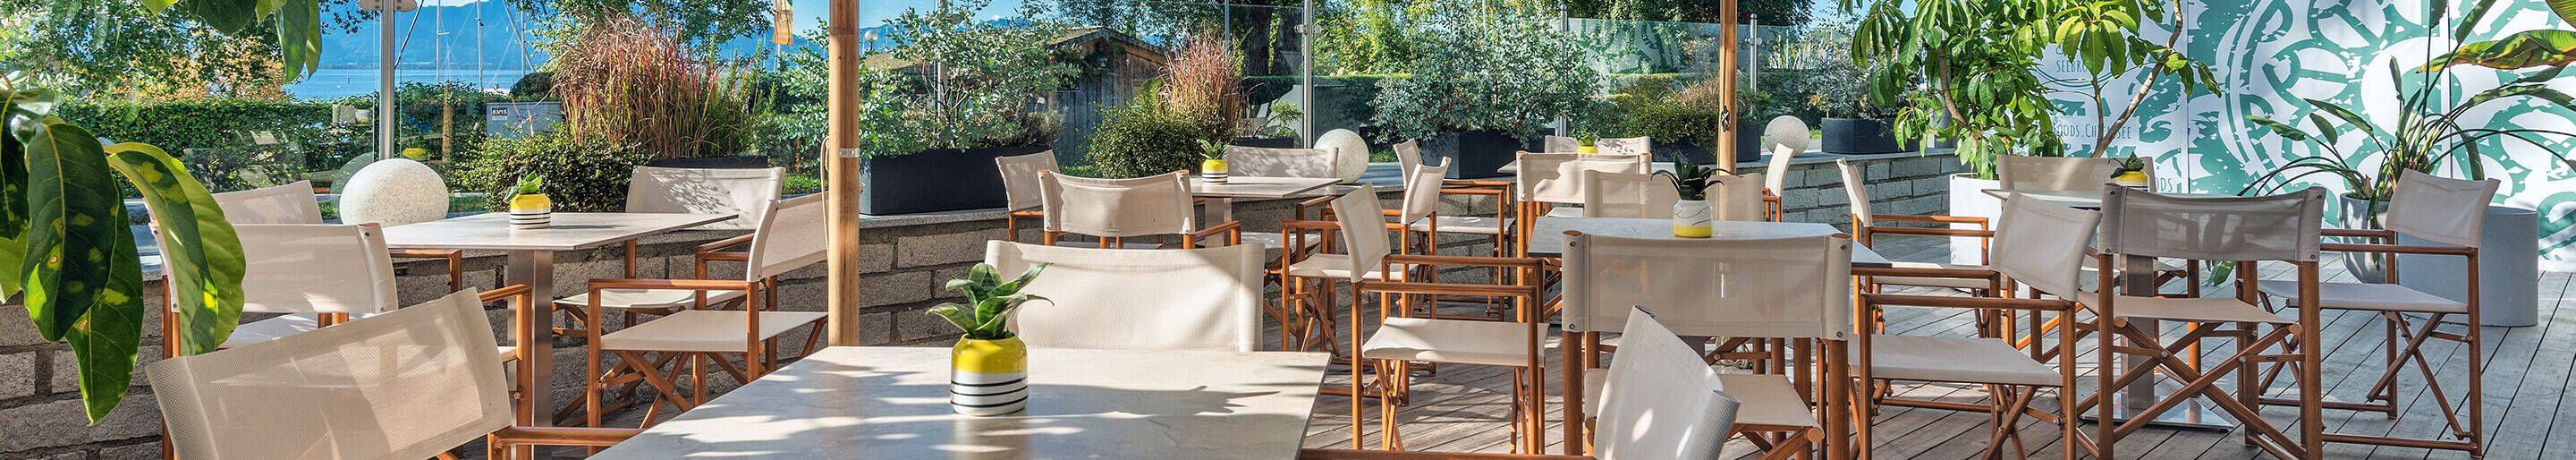 Outdoor Möbel für Gastronomie und Hotellerie und Biergarten